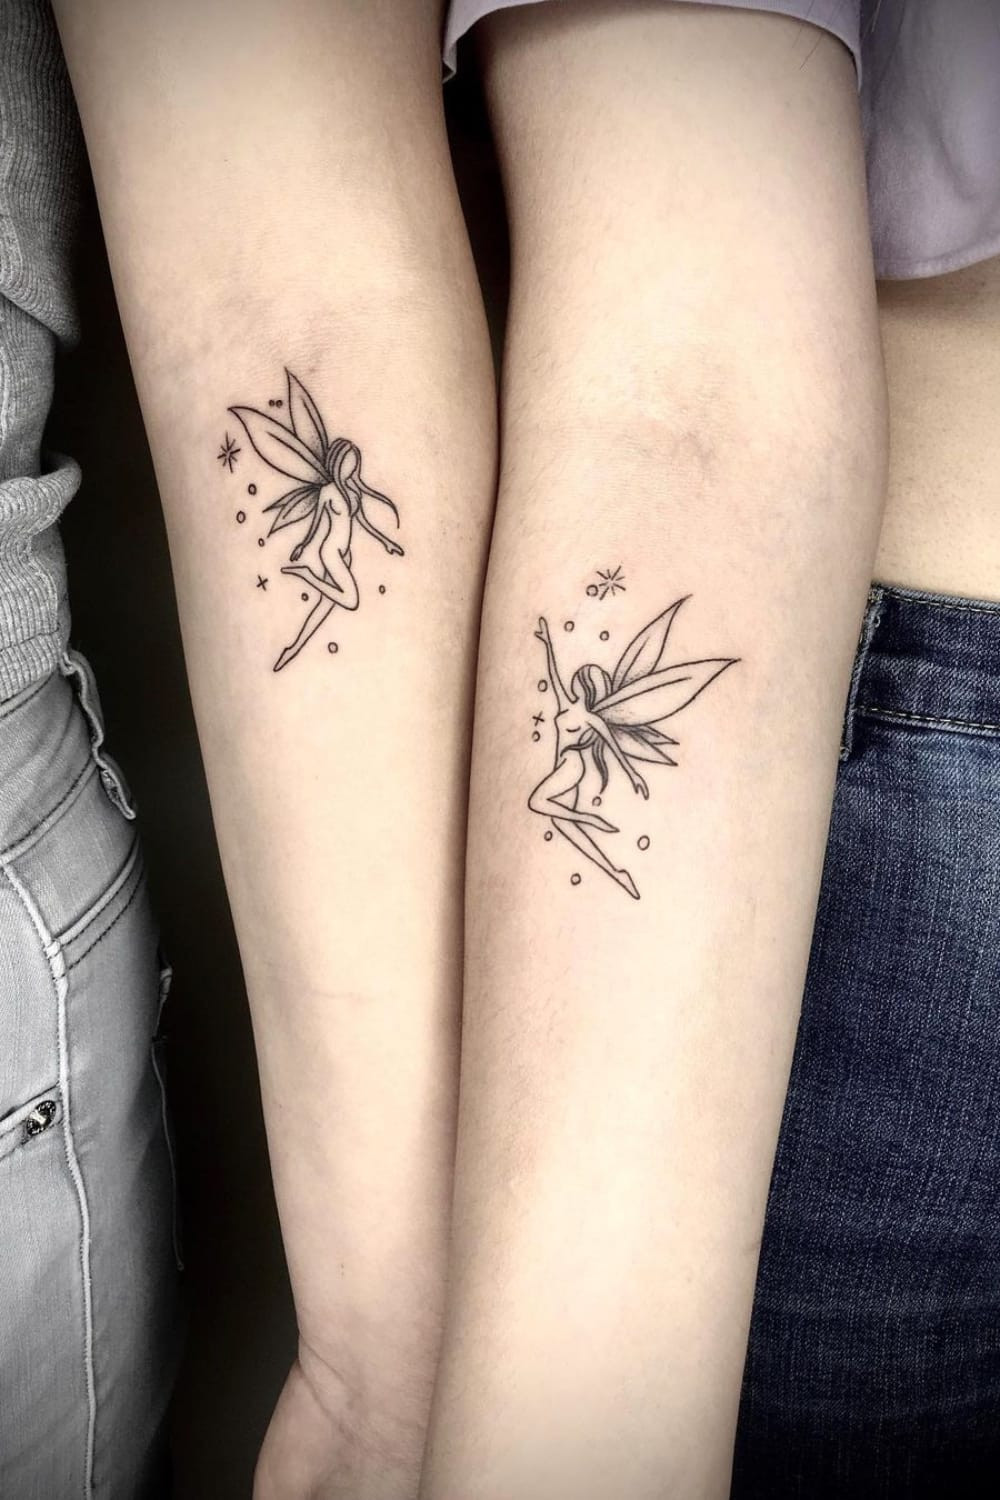 27 Best Matching Tattoos Ideas For Best Friends - 185